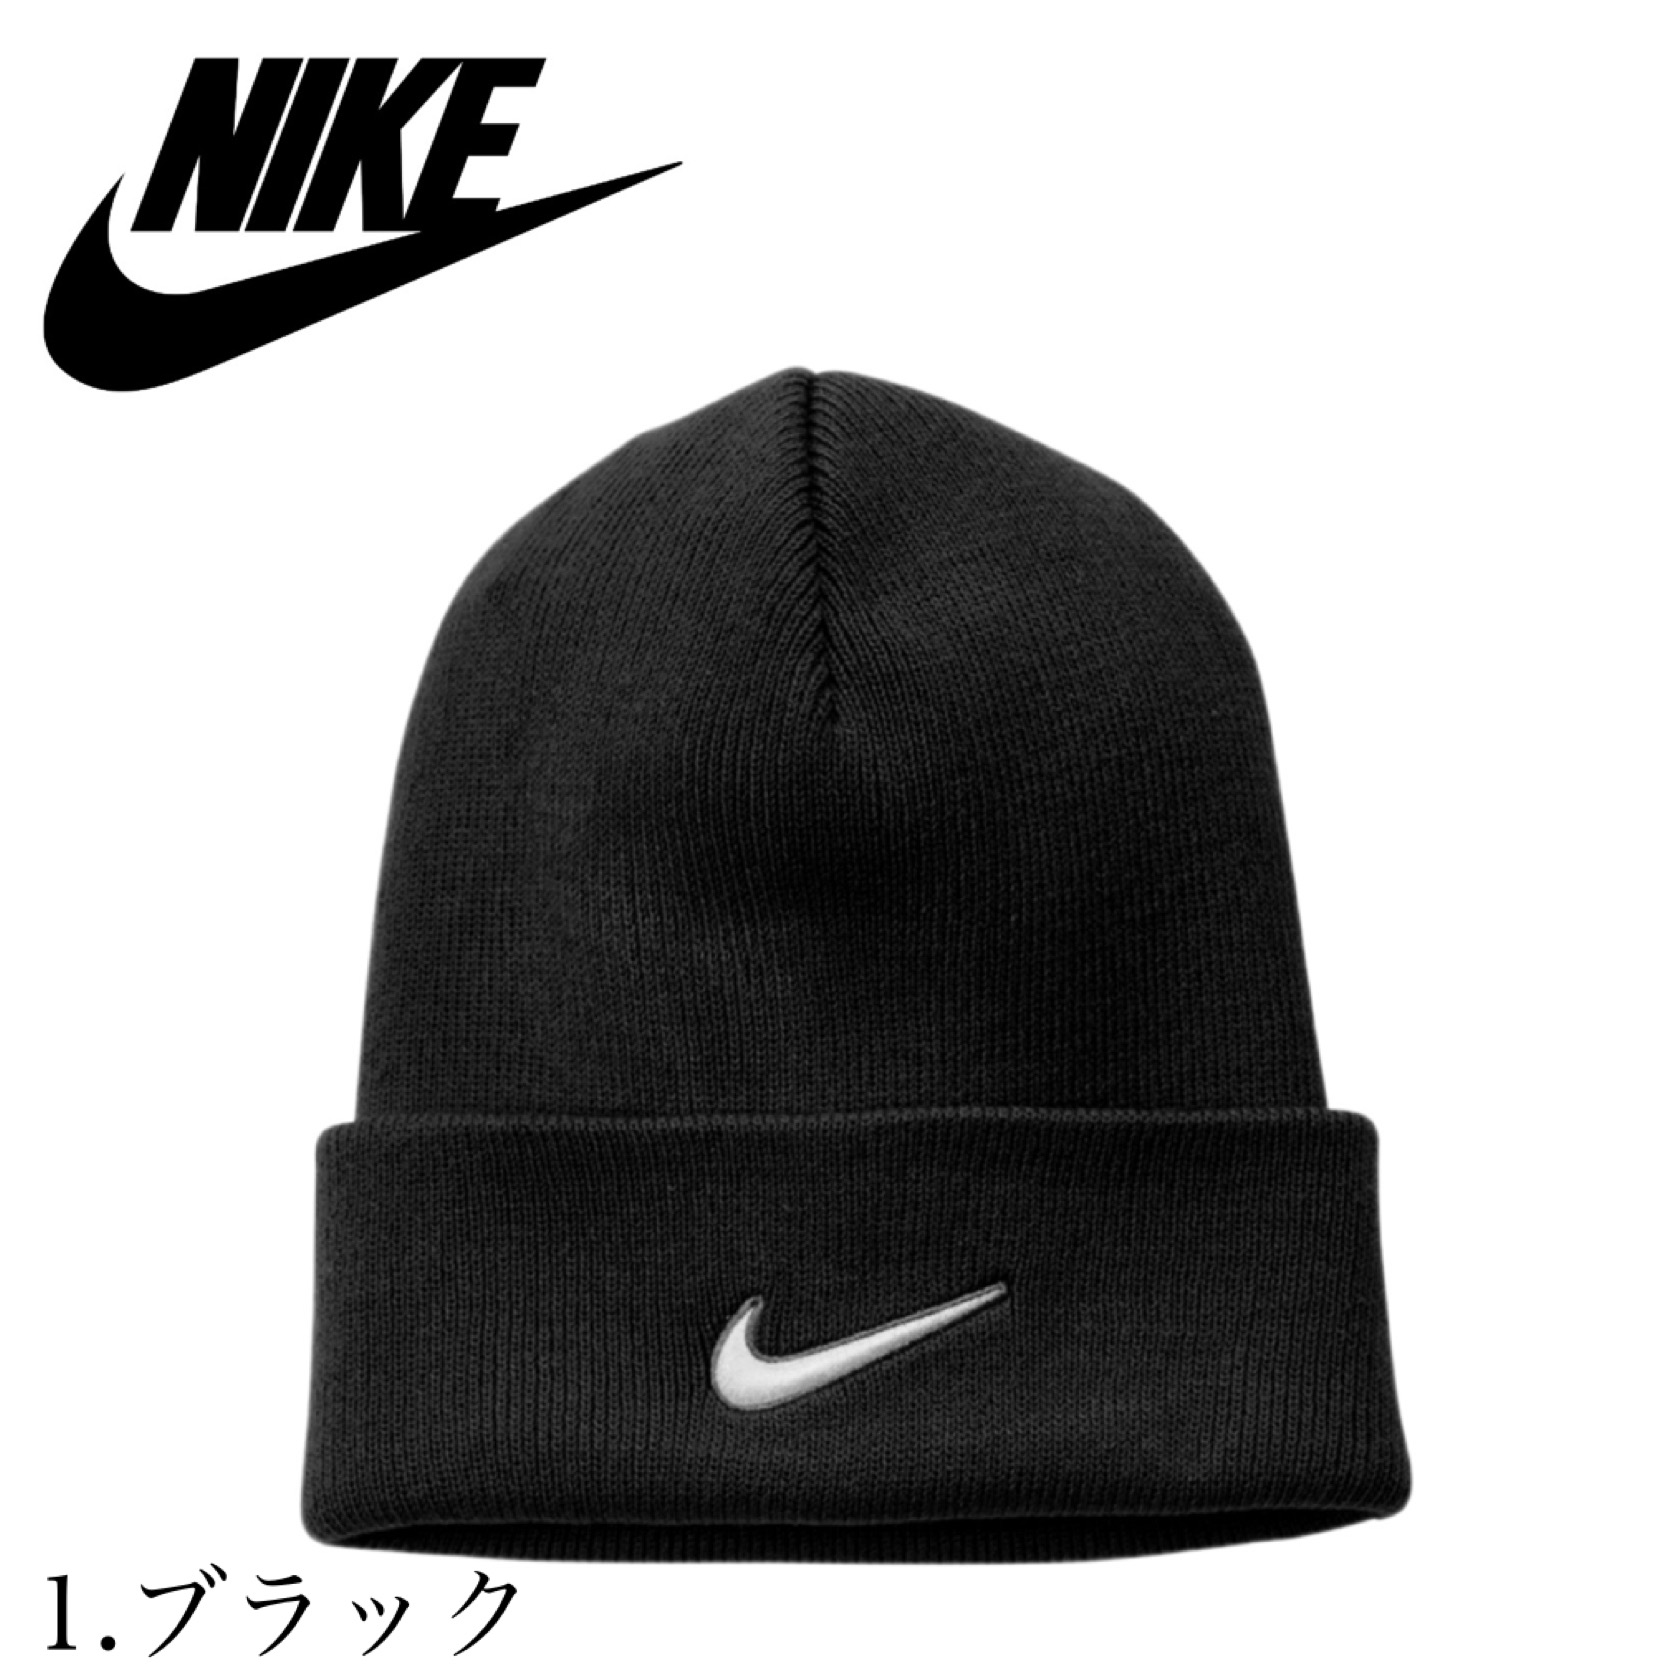 ナイキ Nike ビーニー ニット帽子 ワンポイント ロゴ サイド